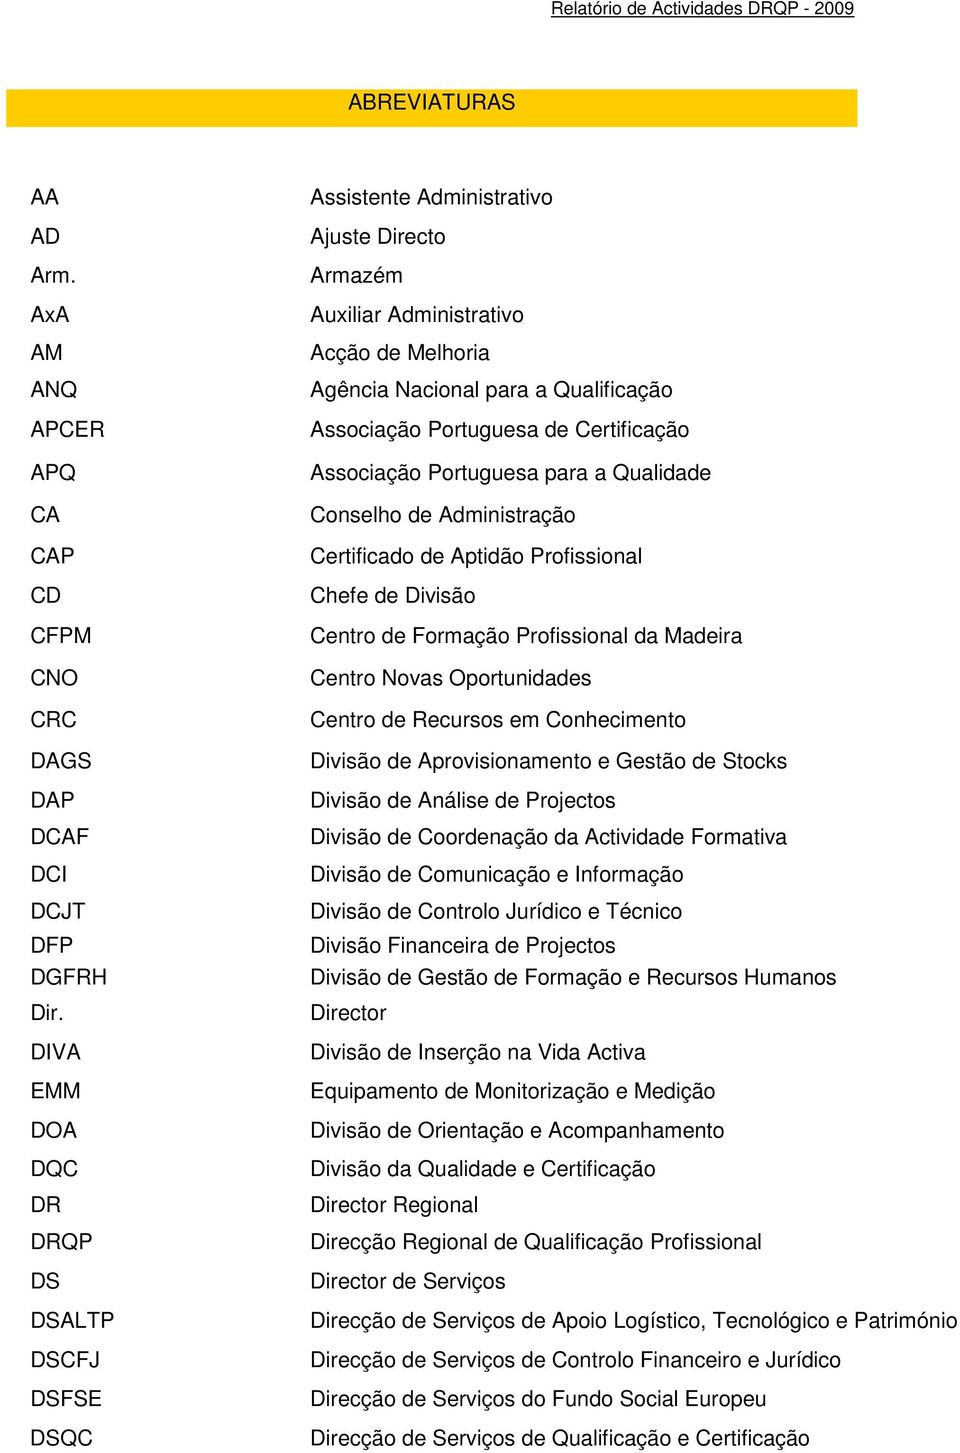 Portuguesa de Certificação Associação Portuguesa para a Qualidade Conselho de Administração Certificado de Aptidão Profissional Chefe de Divisão Centro de Formação Profissional da Madeira Centro